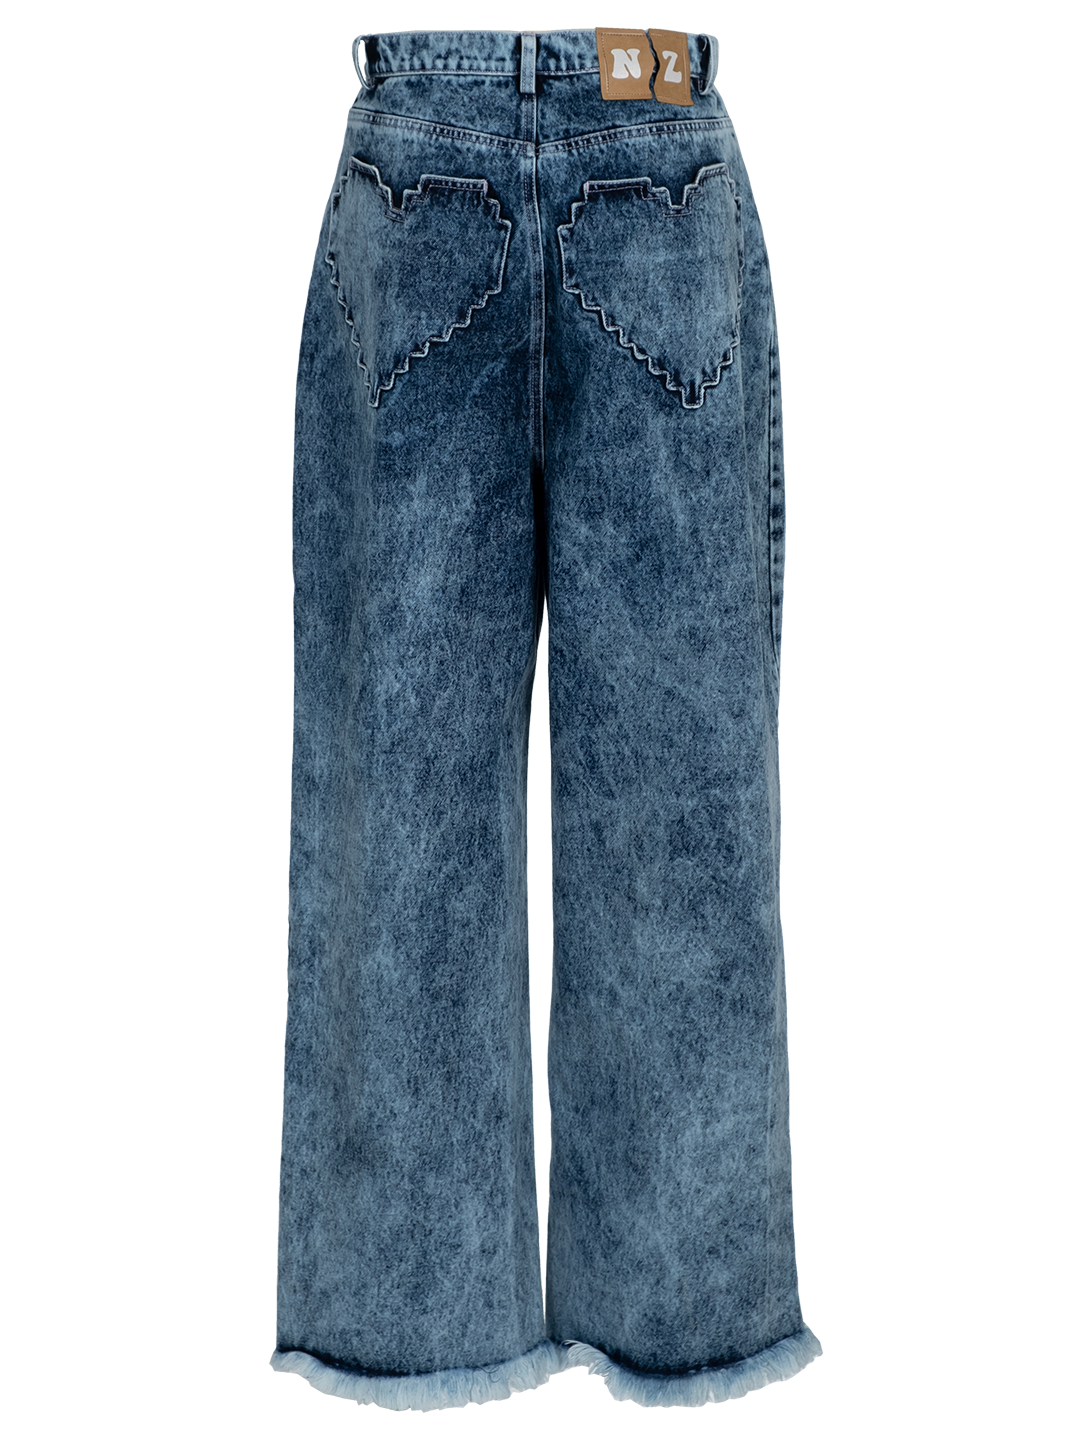 Pixel Heart Jeans